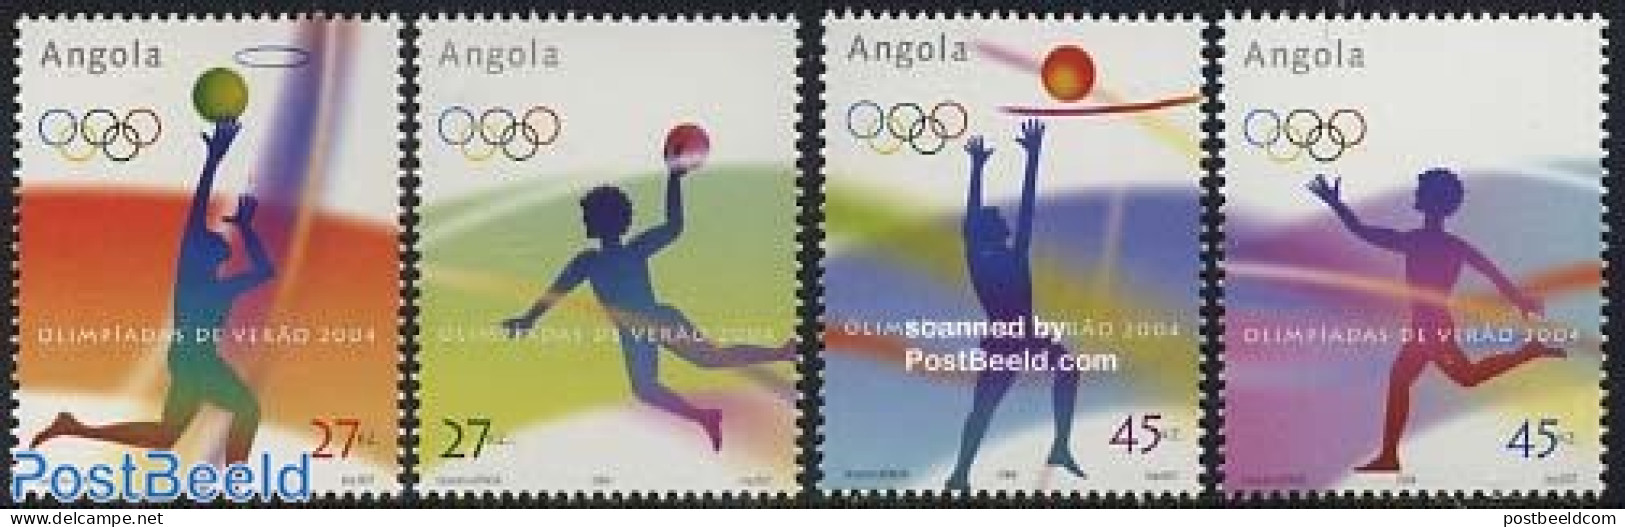 Angola 2004 Olympic Games 4v, Mint NH, Sport - Basketball - Handball - Olympic Games - Volleyball - Basketball